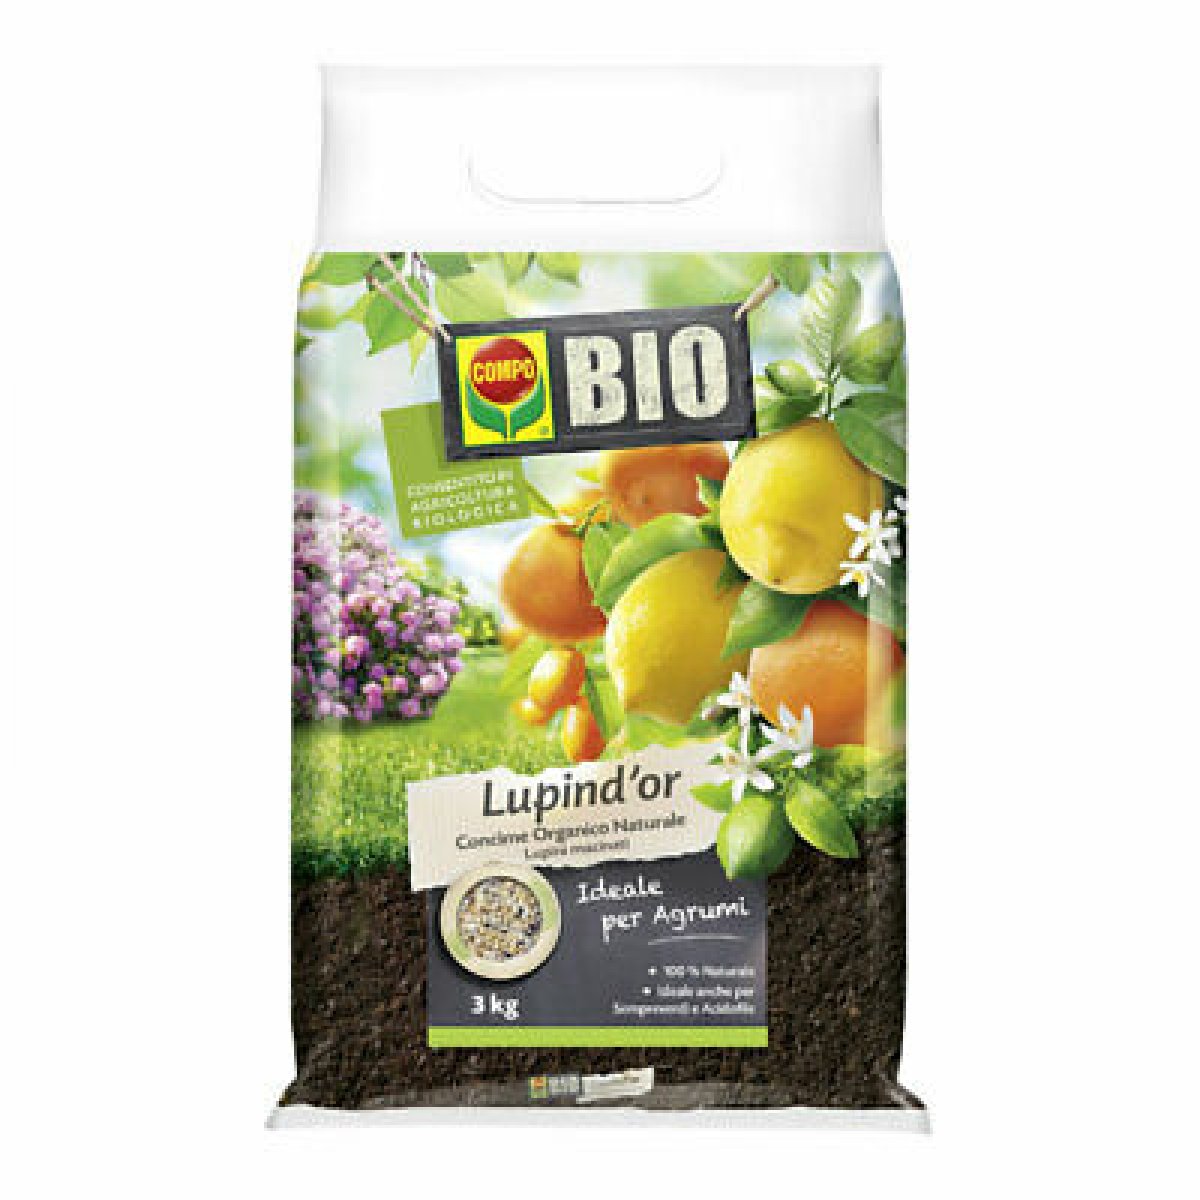 Lupind'or Lupini macinati Bio Compo - 3 kg 